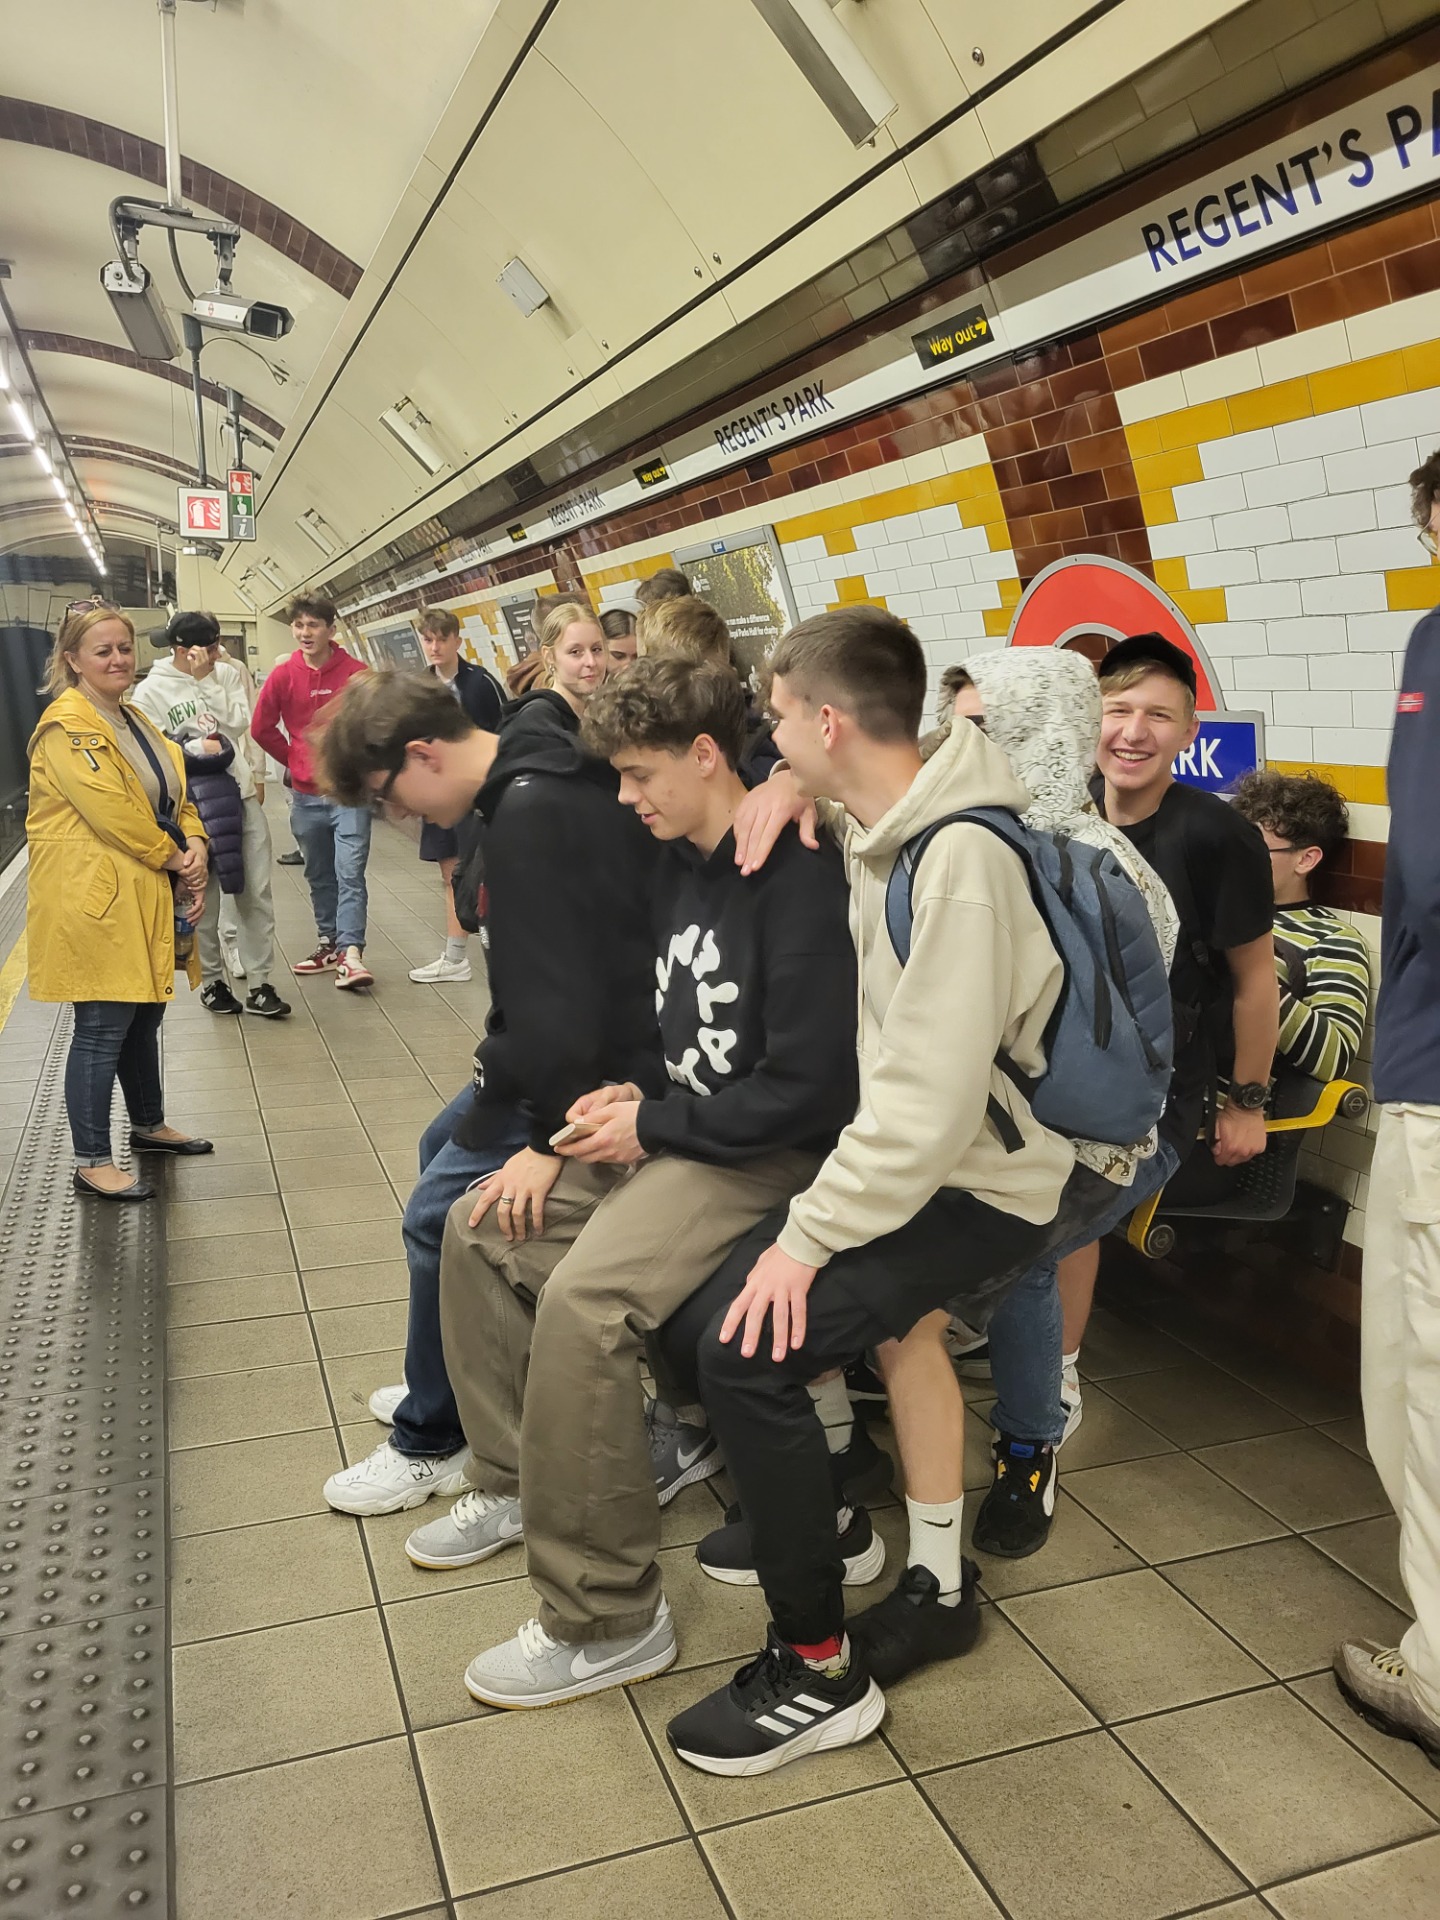 
Uczniowie na stacji metra. 

